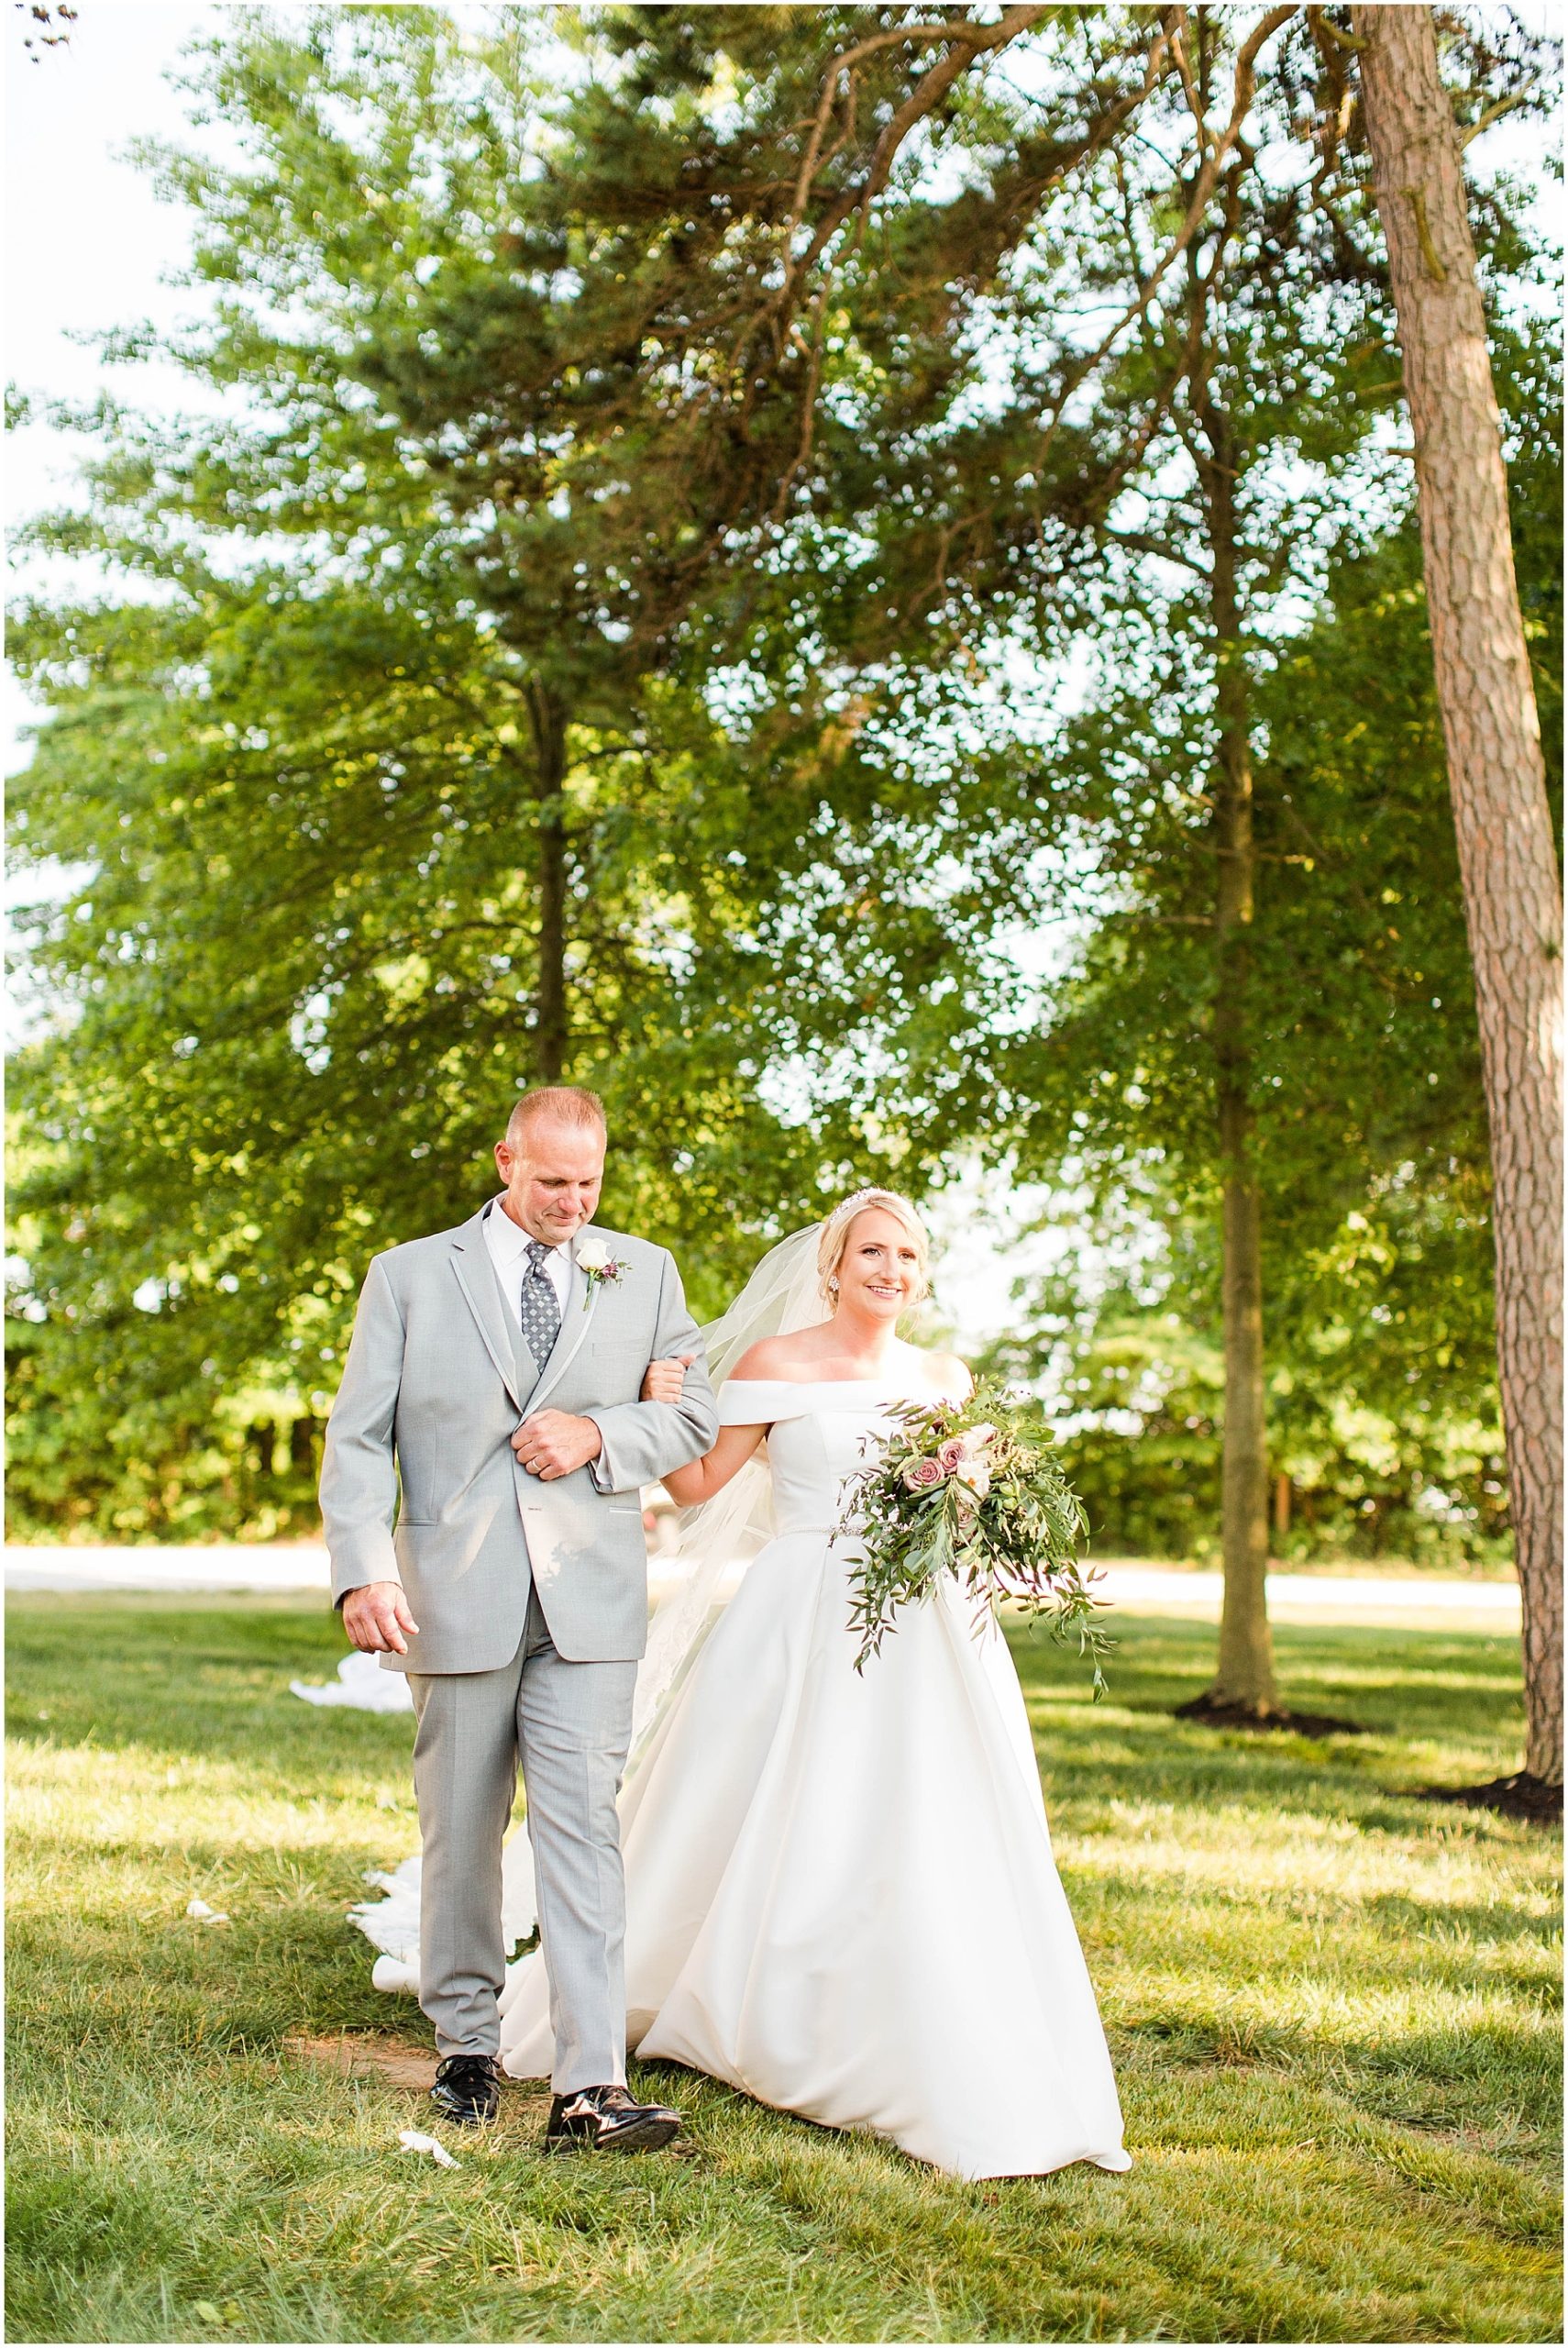 Bryce and Lauren | Wedding Blog0115.jpg